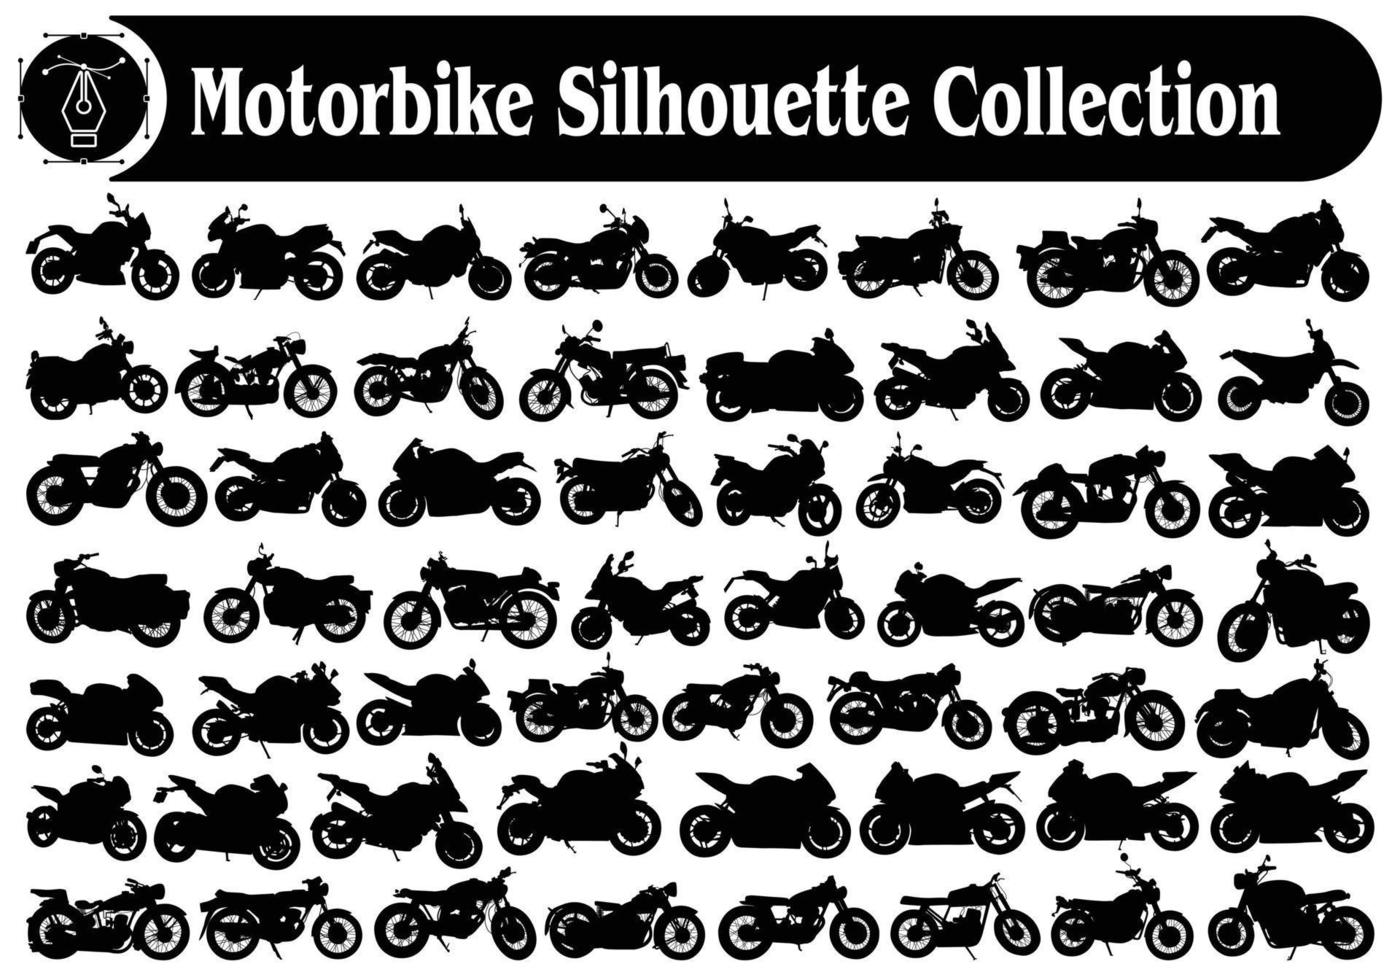 Vintage-Motorrad und moderne Motorrad-Silhouetten-Kollektion vektor